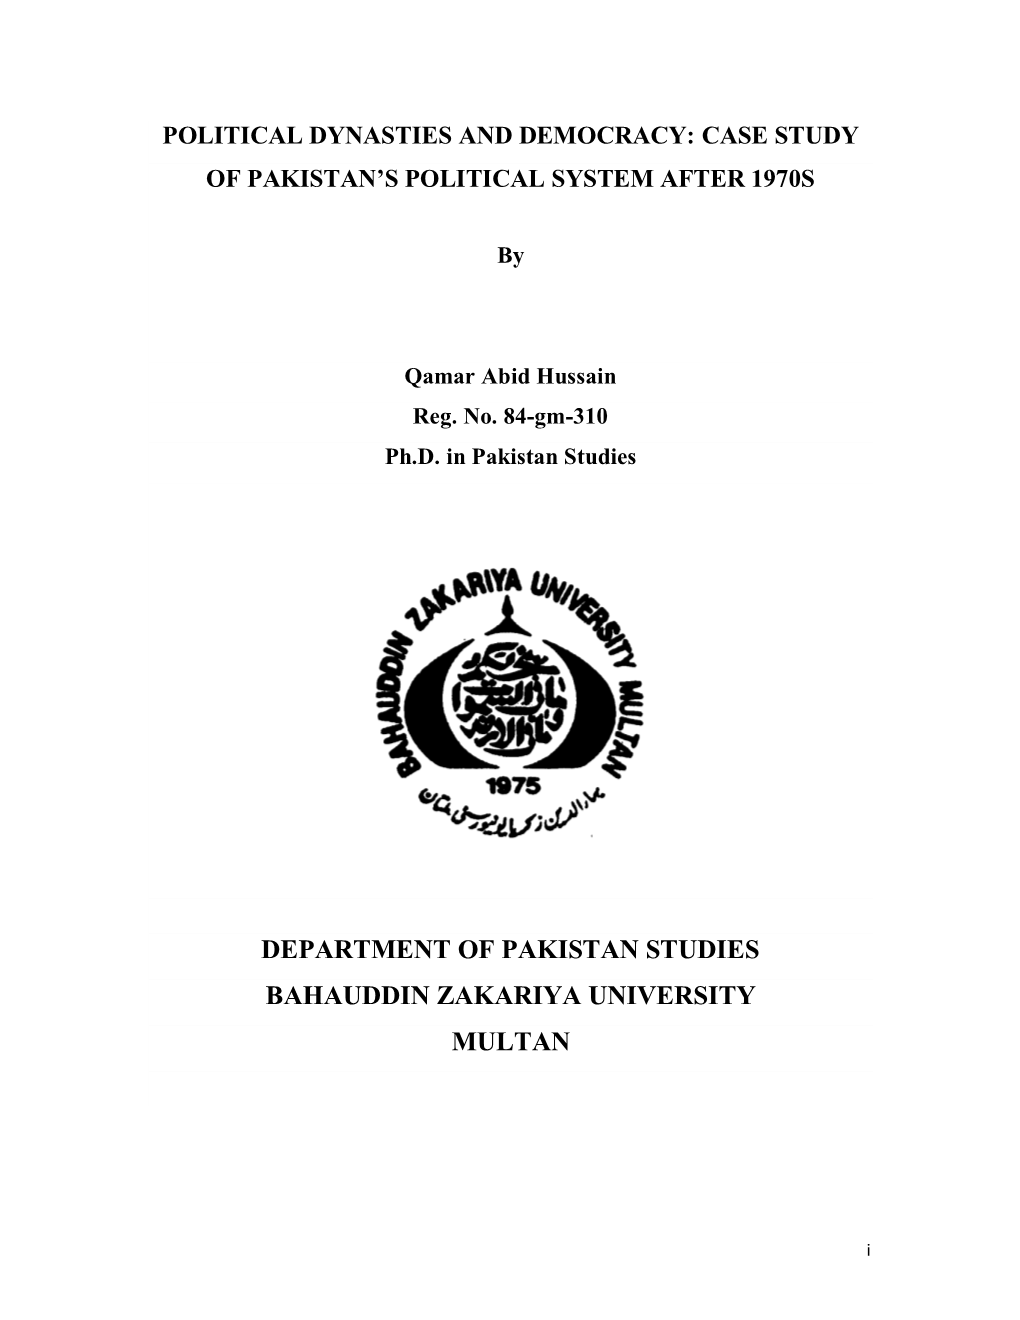 Qamar Abid Hussain Pak Study 2020 Bzu .Pdf